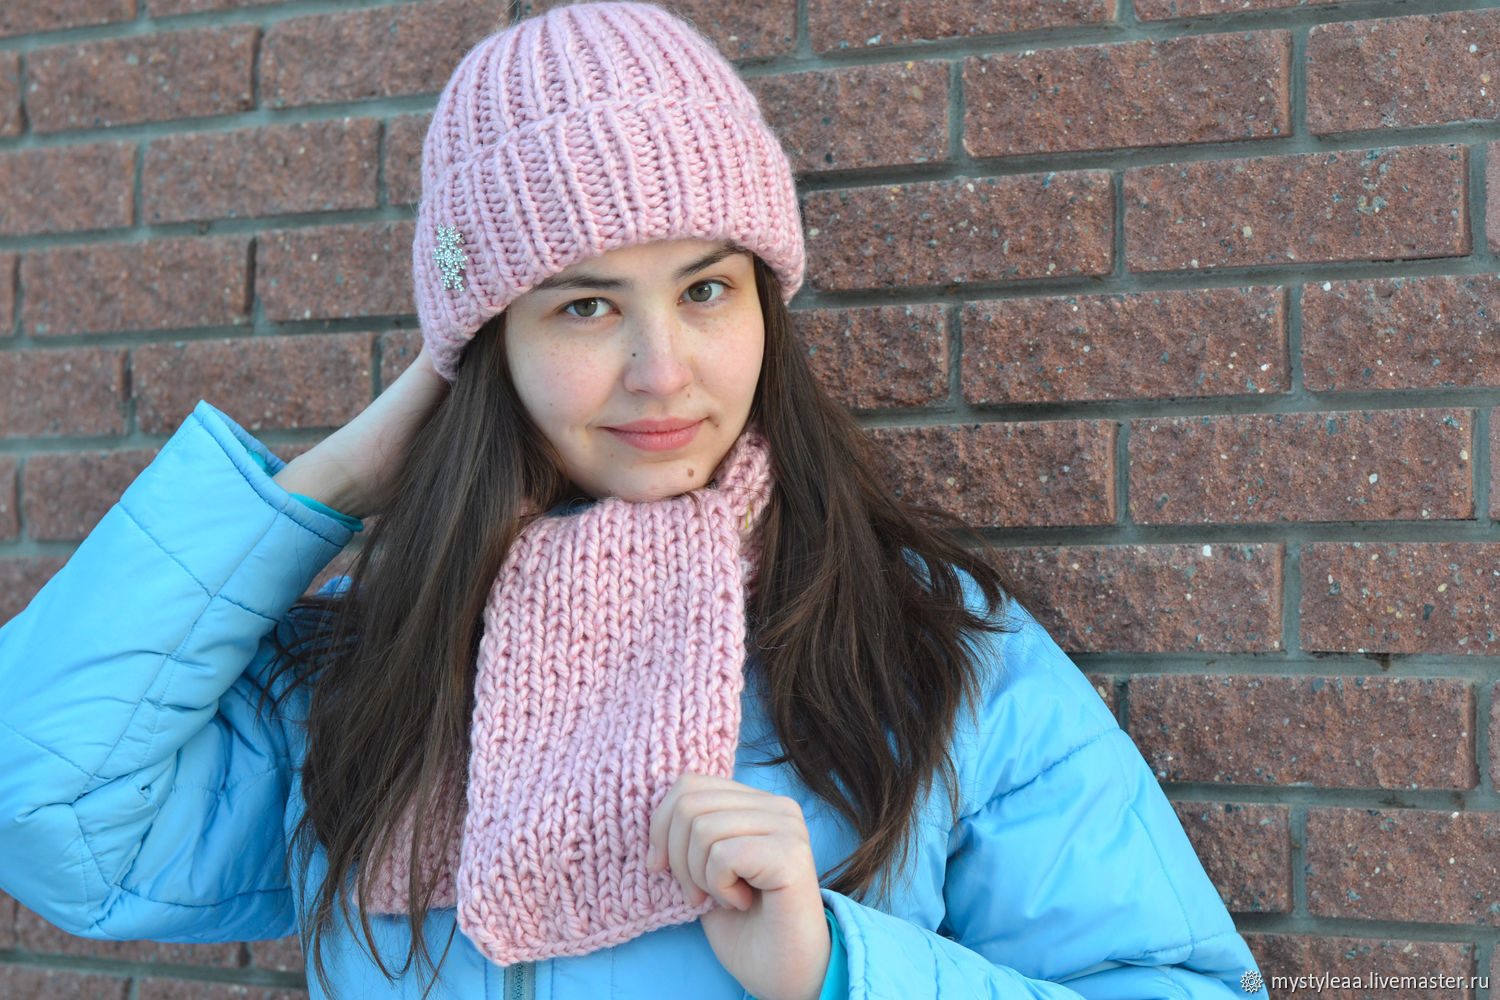 Розовый комплект шапка и шарф из толстой пряжи крупной вязки